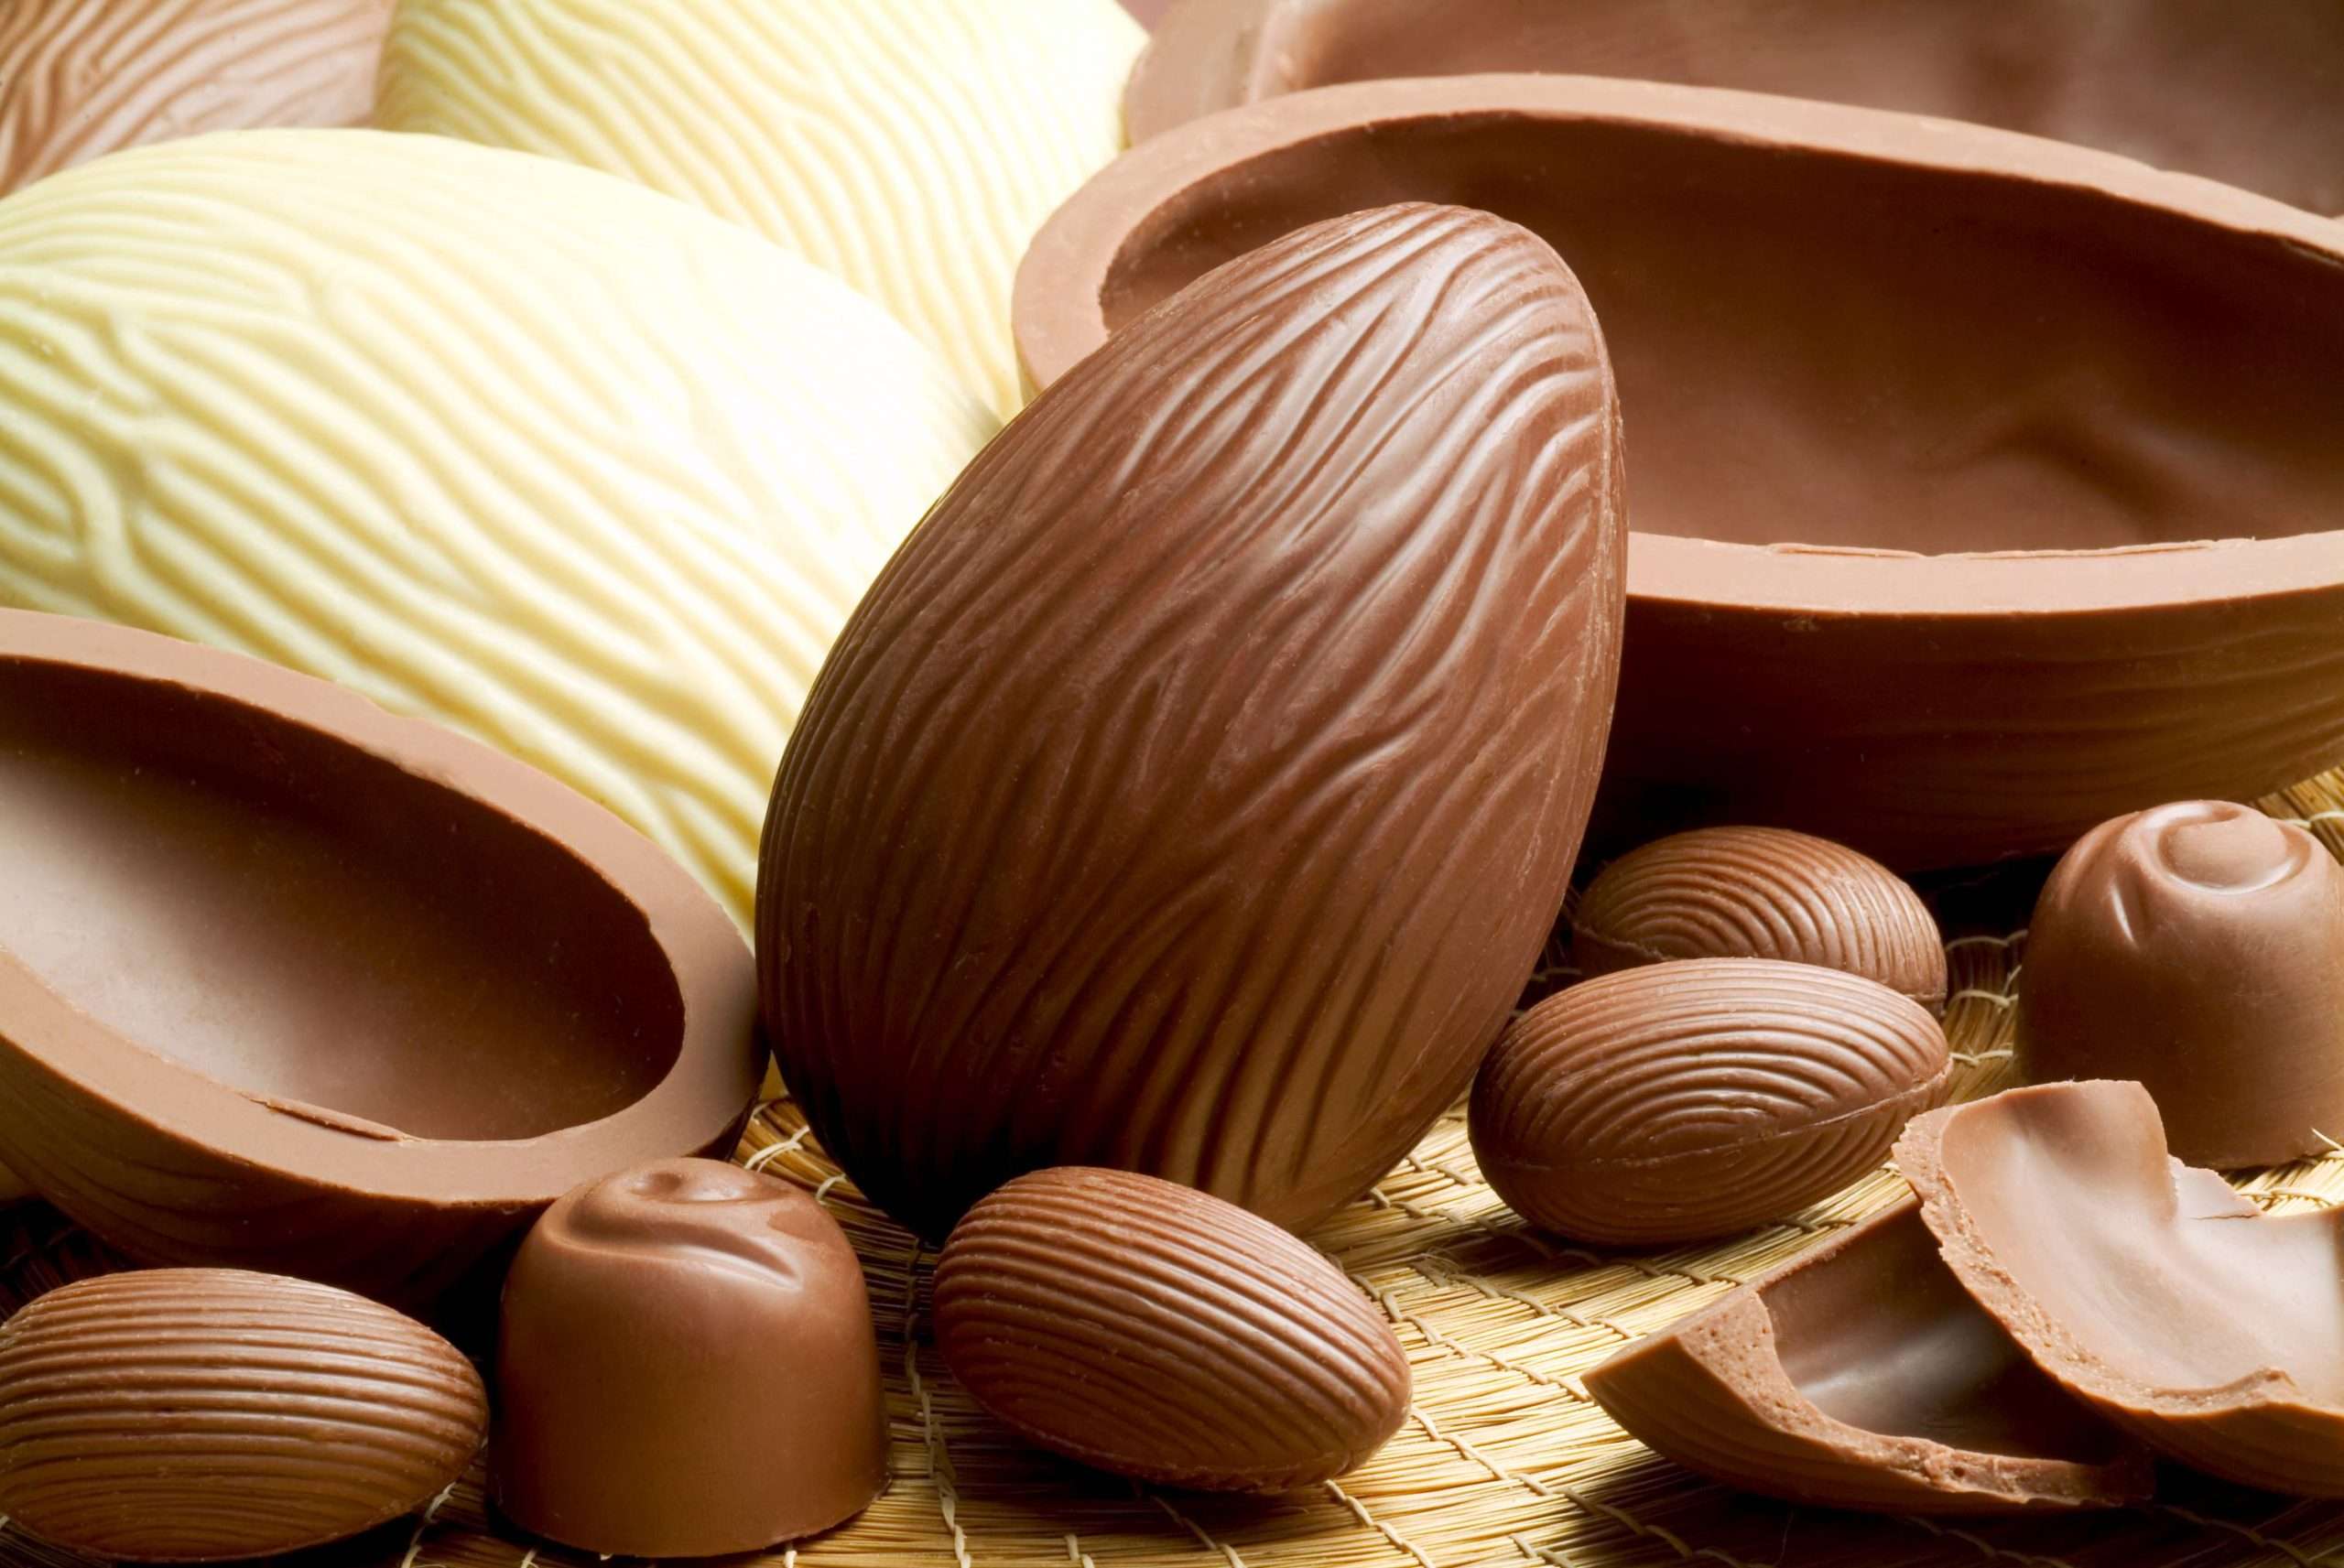 Consumo exagerado de chocolate na pascoa gera malefícios, saiba quais; O mês de abril chegou e com ele o tão aguardado feriado da Páscoa